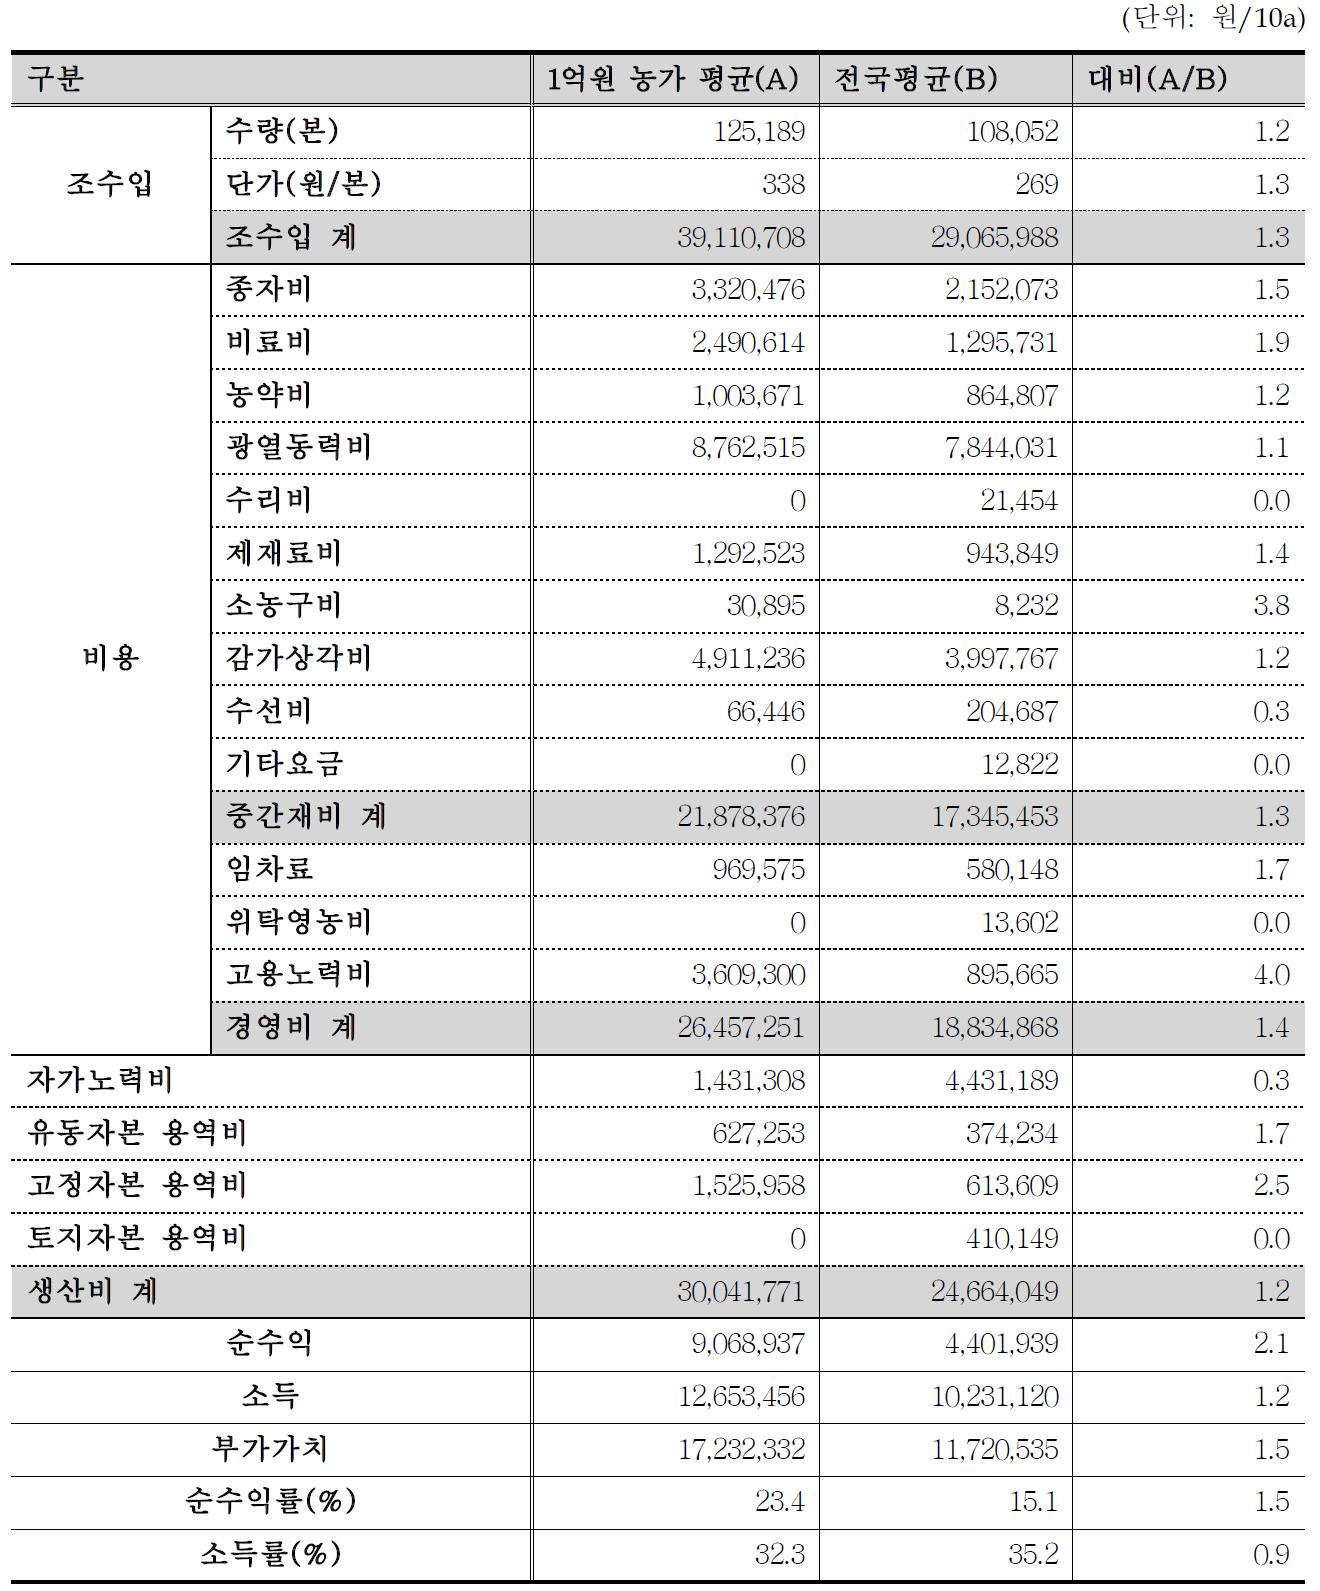 농업소득 1억원 장미 경영성과표